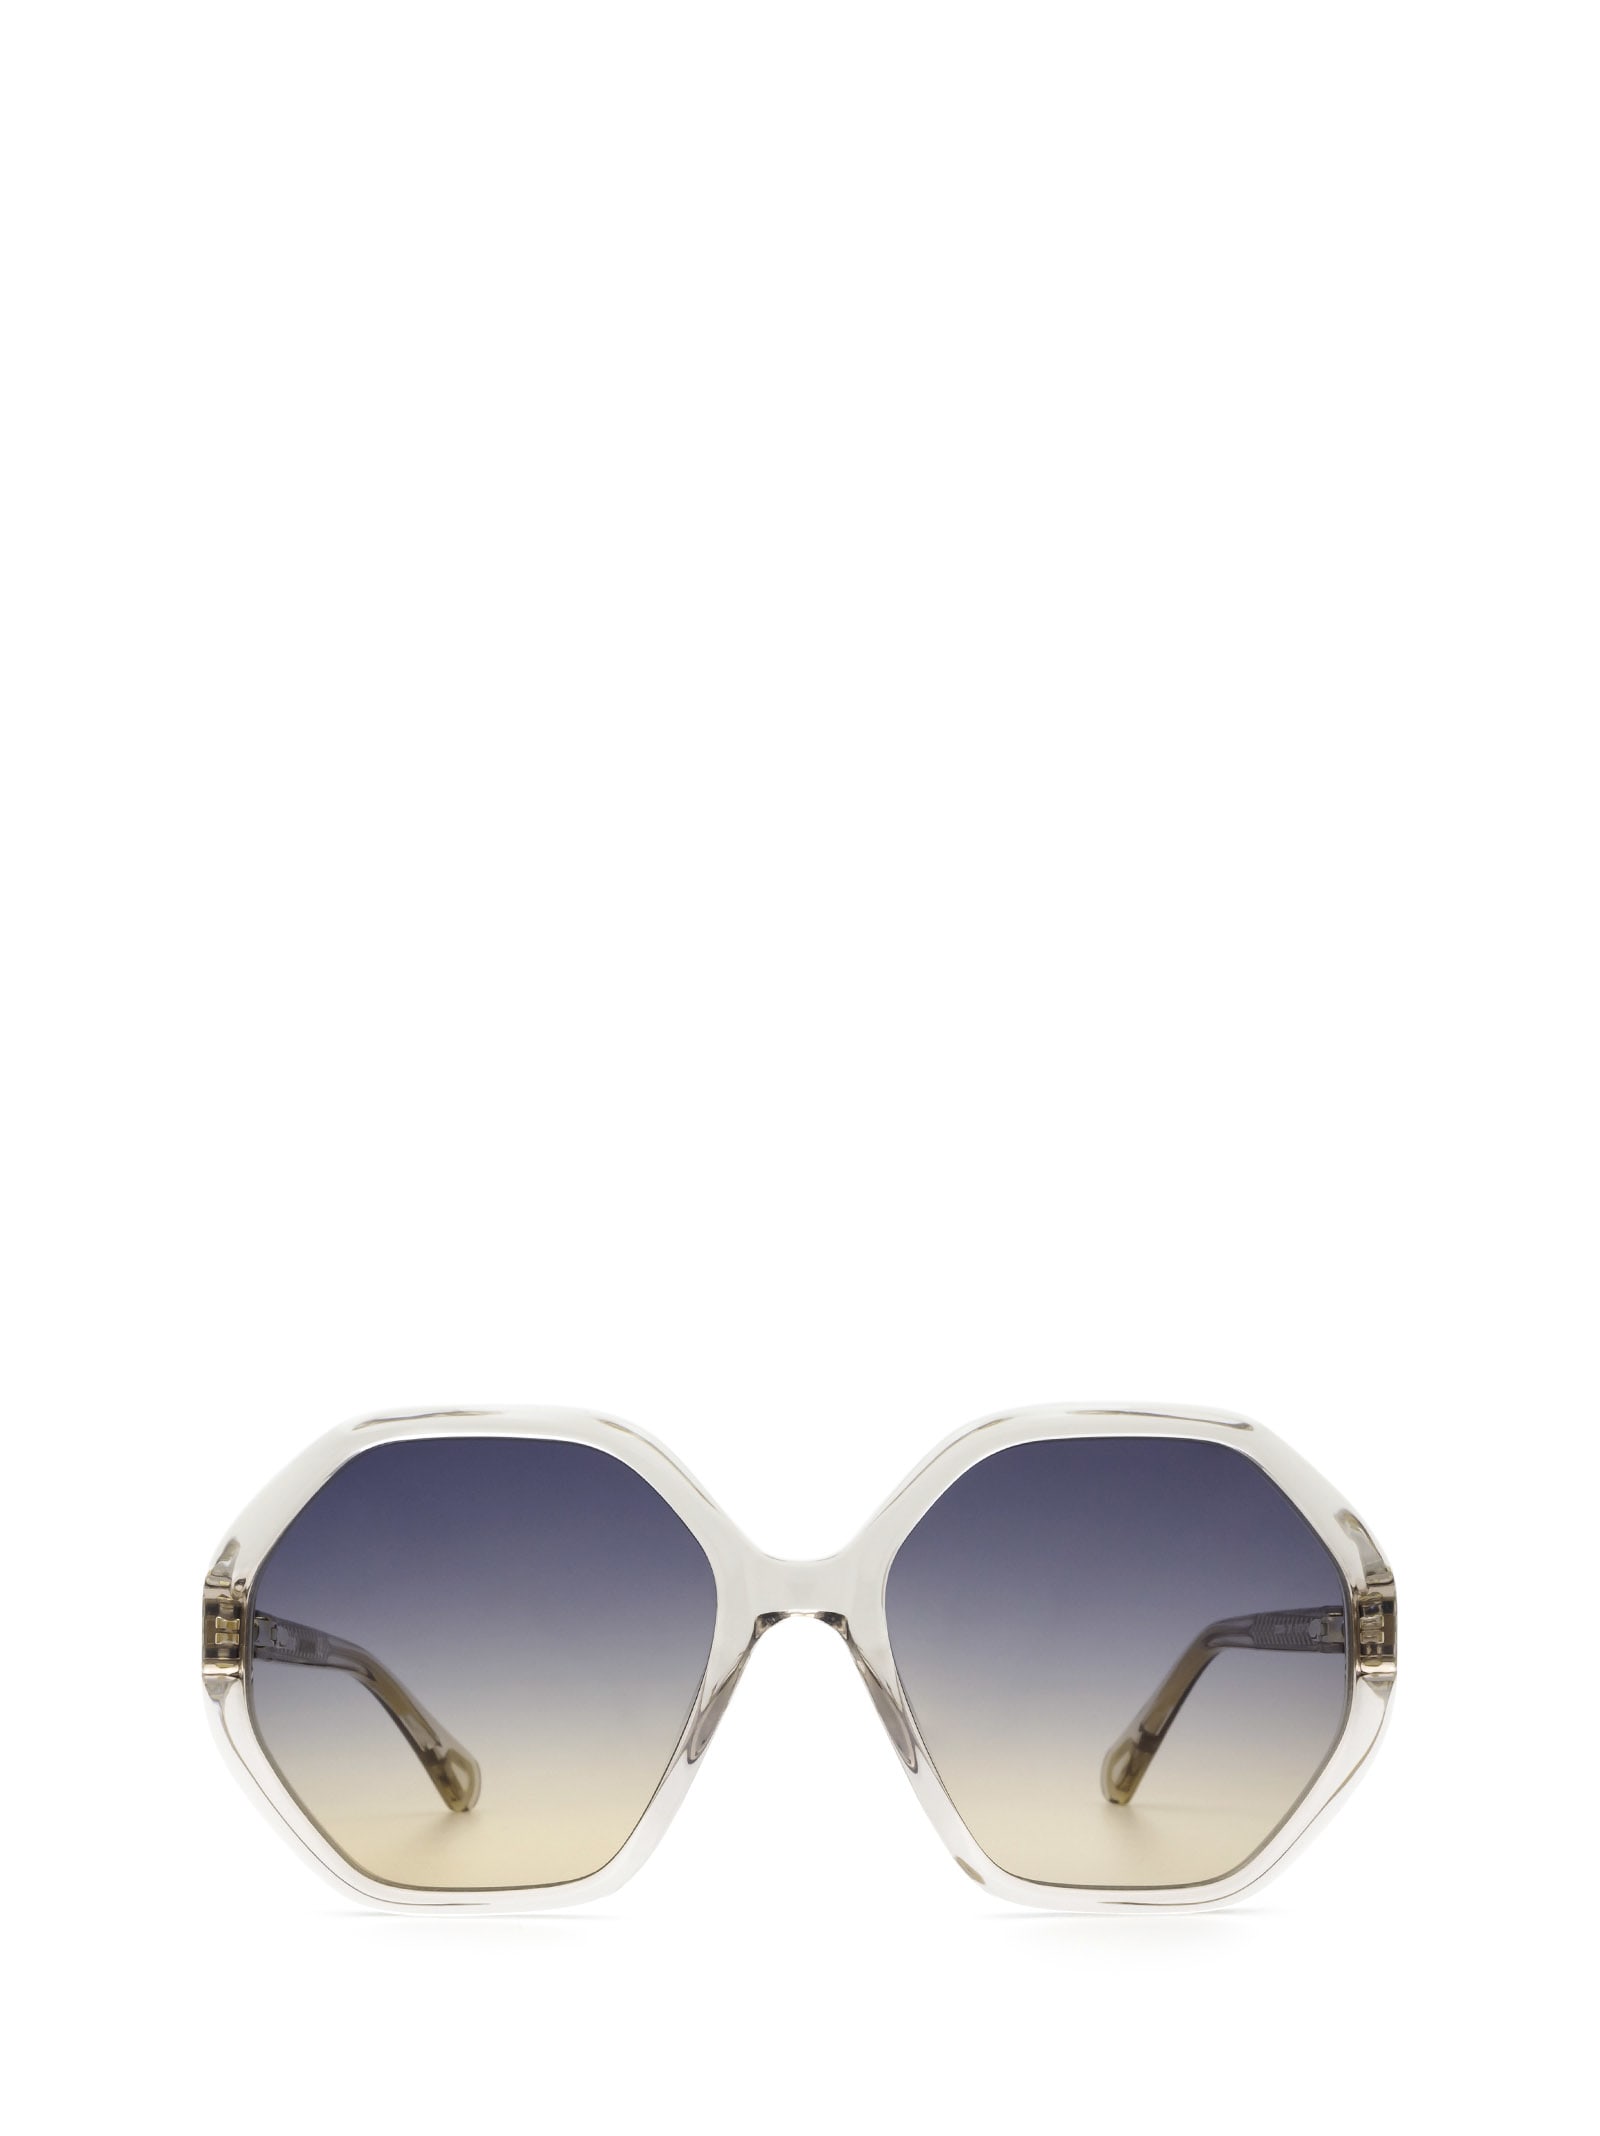 Chloé Eyewear Chloé Cc0004s Nude Sunglasses